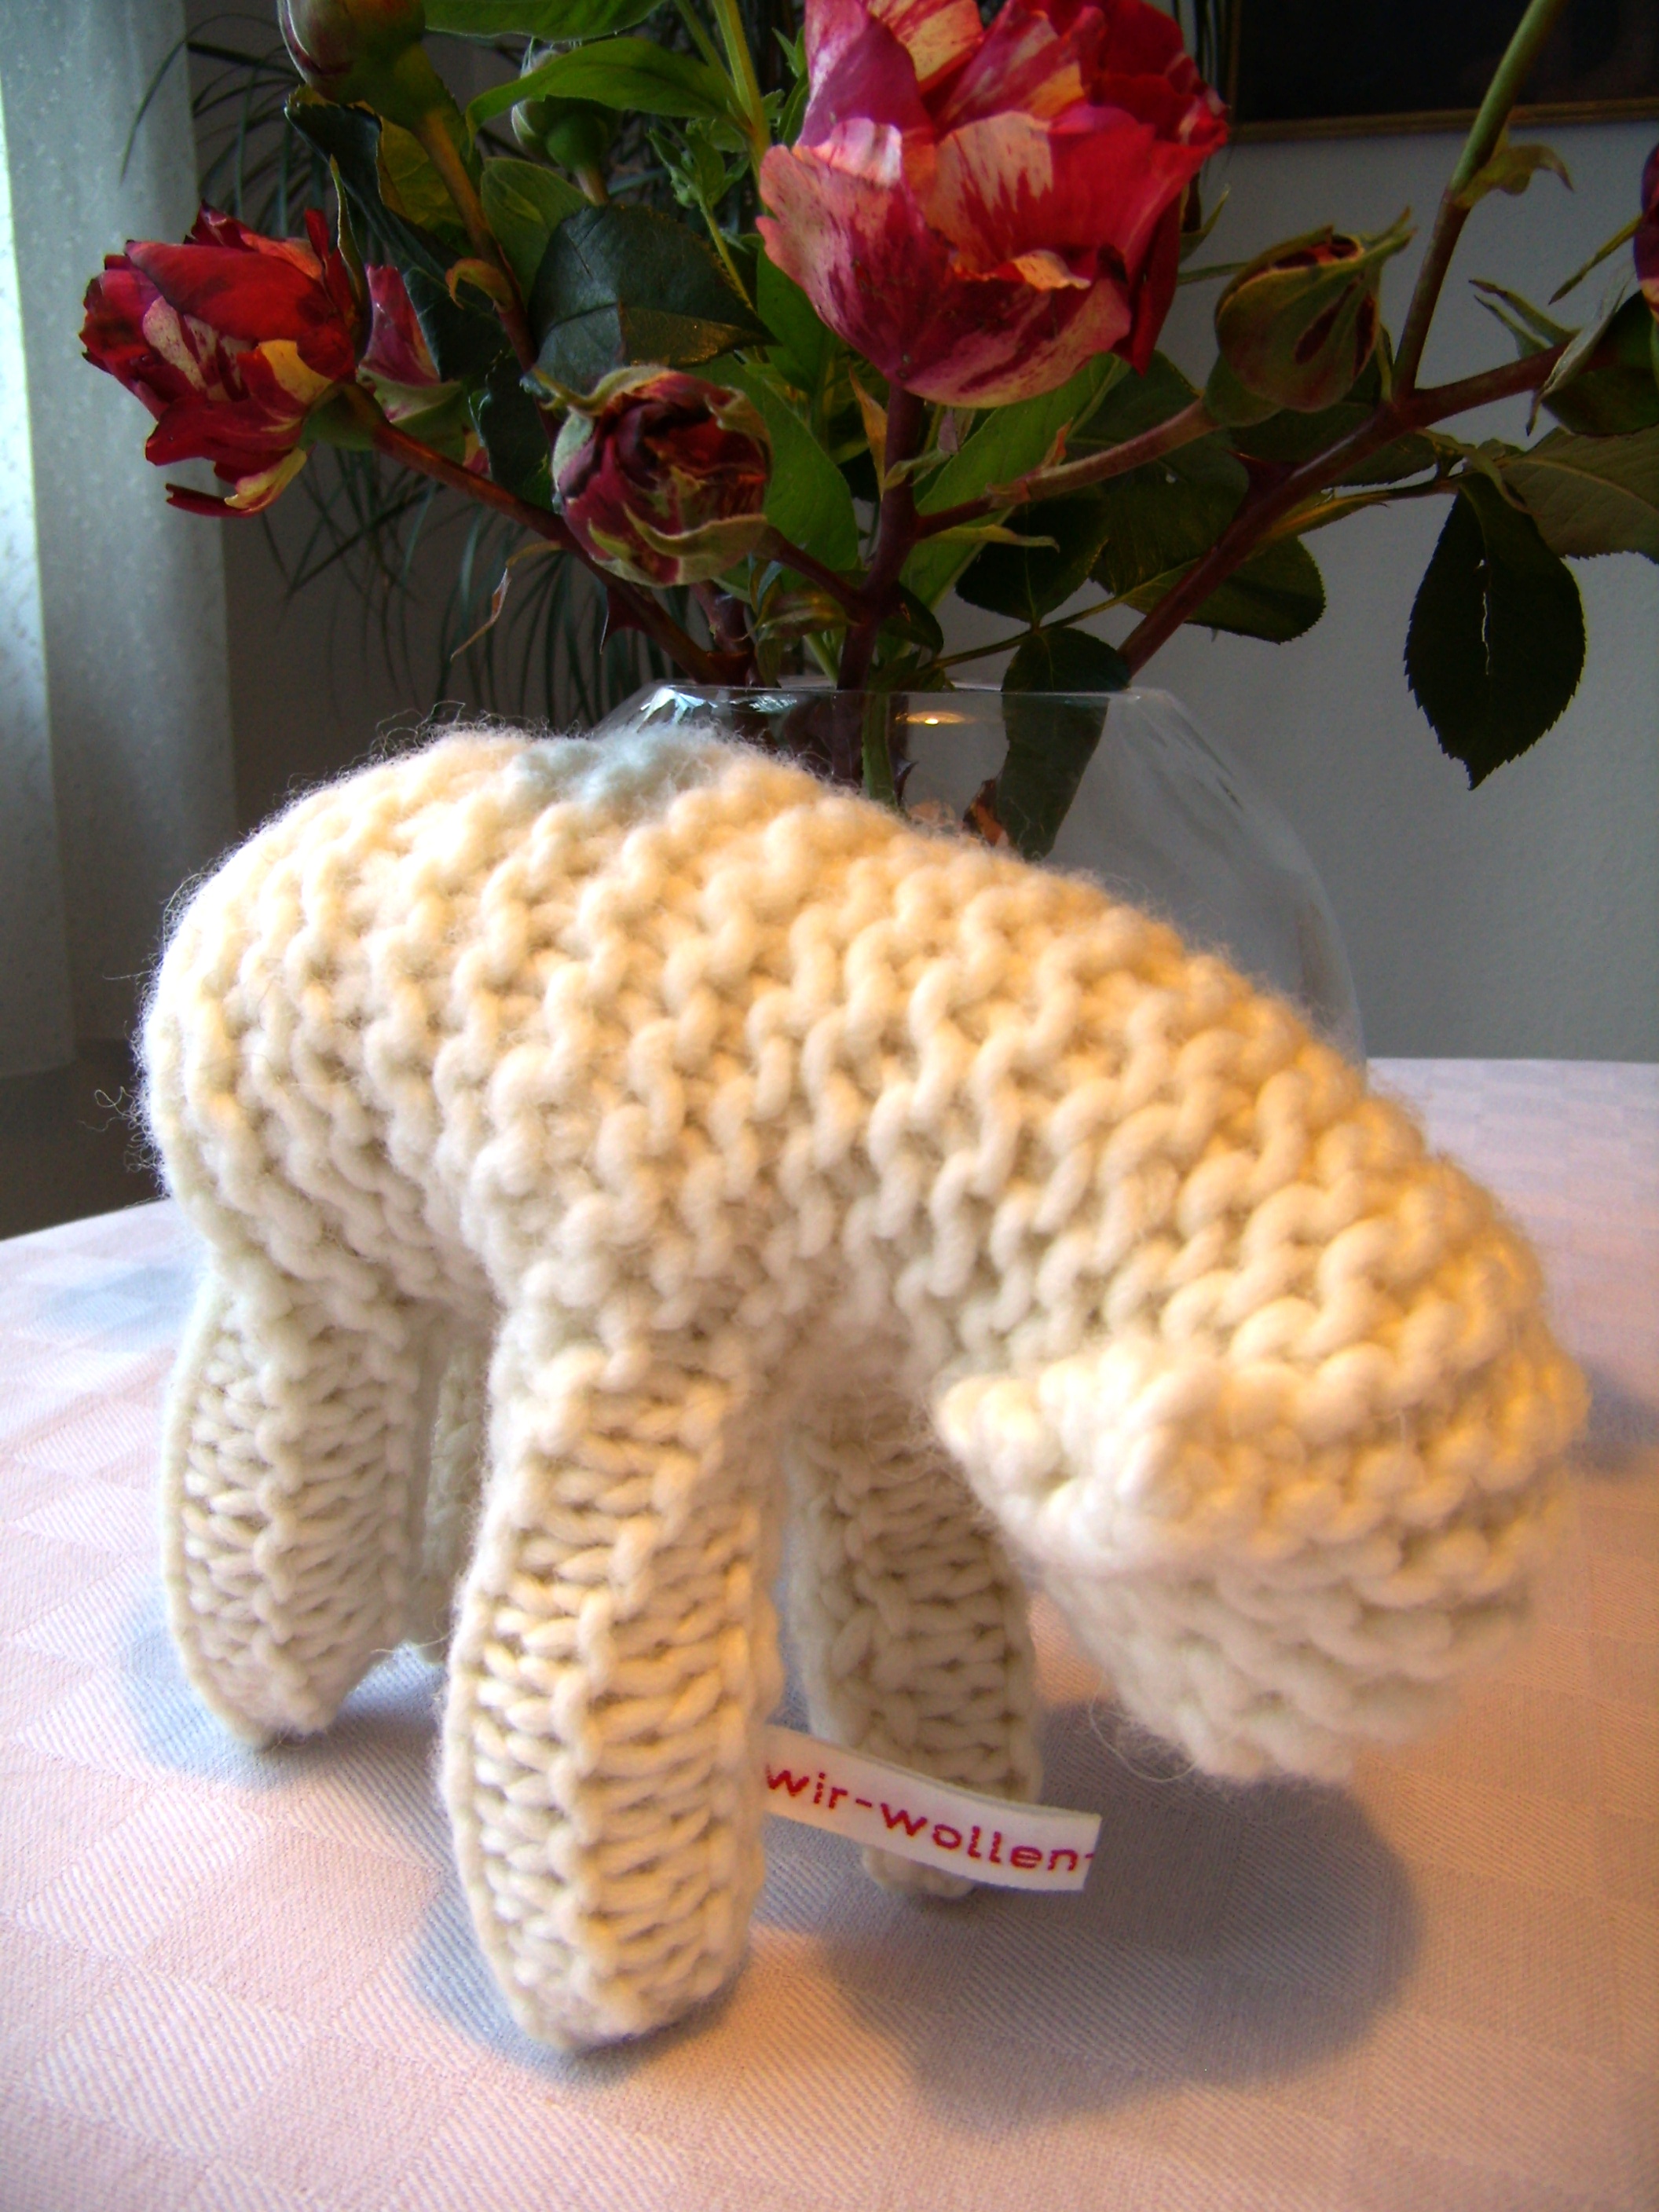 Gestricktes Lamm aus weißer Wolle mit Wäschebändchen "Wir wollen Vielfalt" vor einer Vase mit roten Rosen.